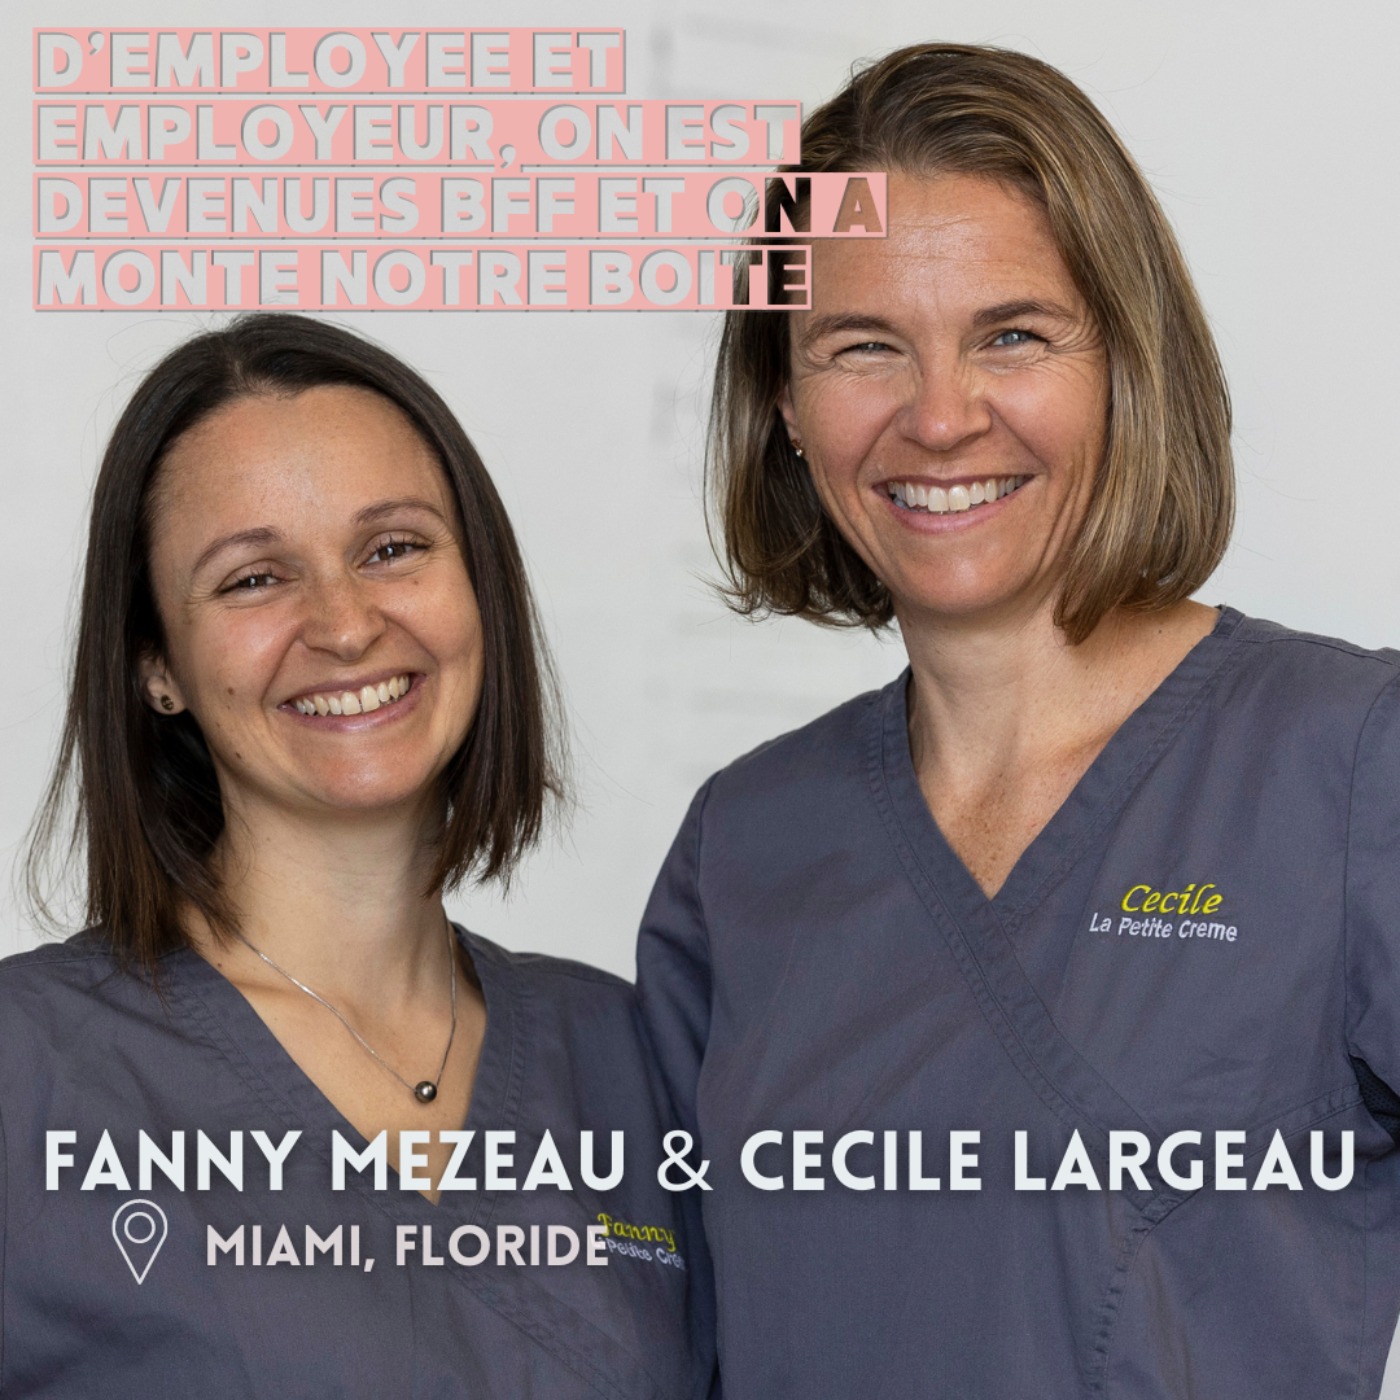 Cécile & Fanny (Miami) : D’employée & employeur, on est devenues BFF et on a monté notre boite